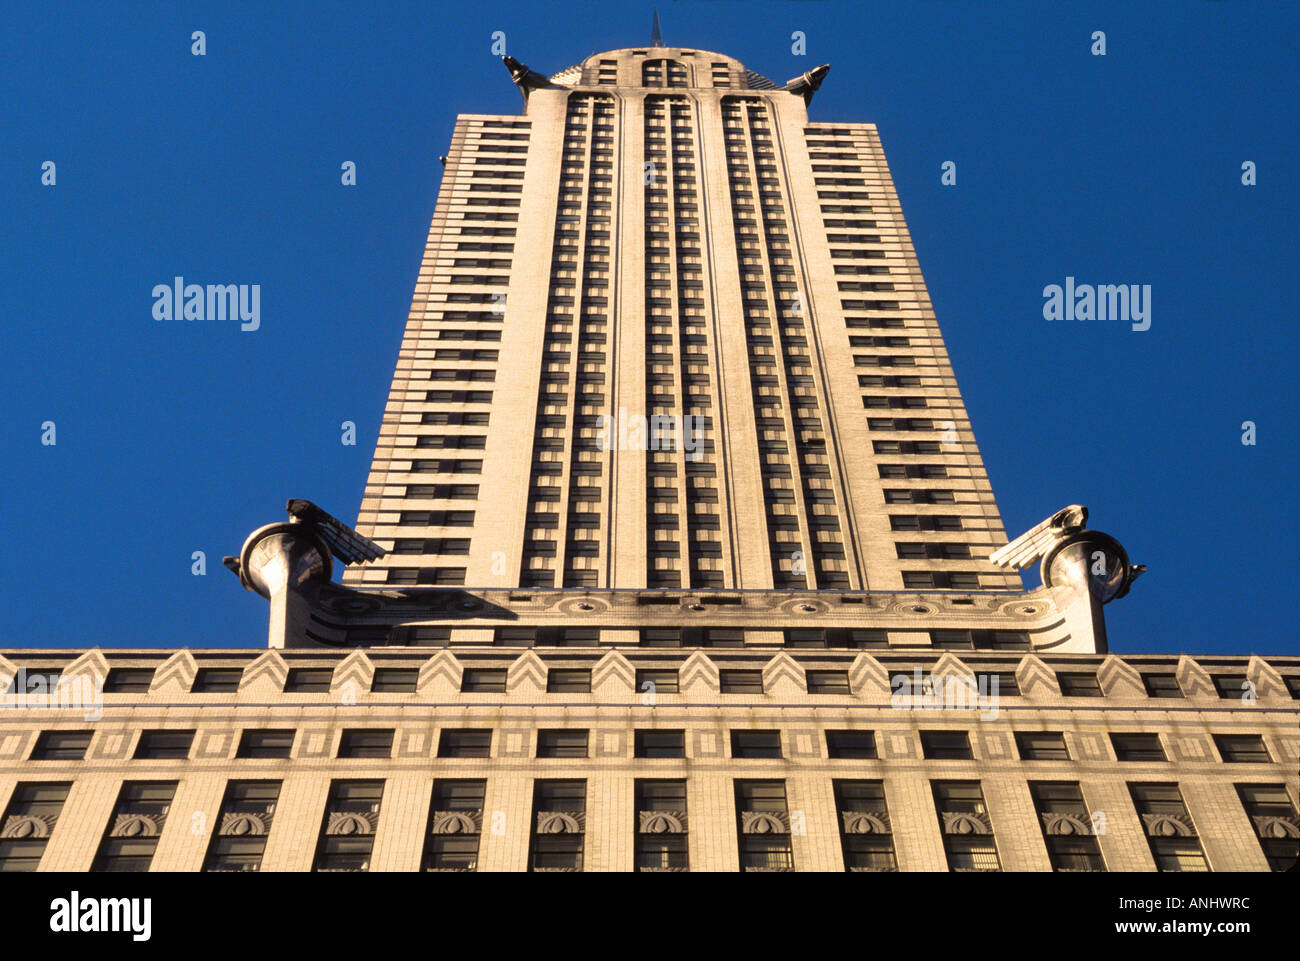 L'extérieur du Chrysler Building, New York. Architecture art déco. Gratte-ciel historique. Gargouilles. Site historique national. New York City Landmark Banque D'Images